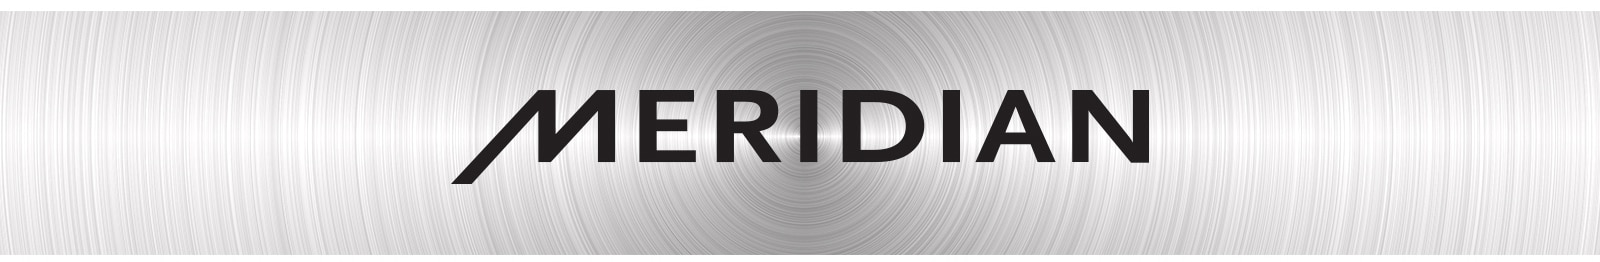 Hình ảnh logo của "Meridian"